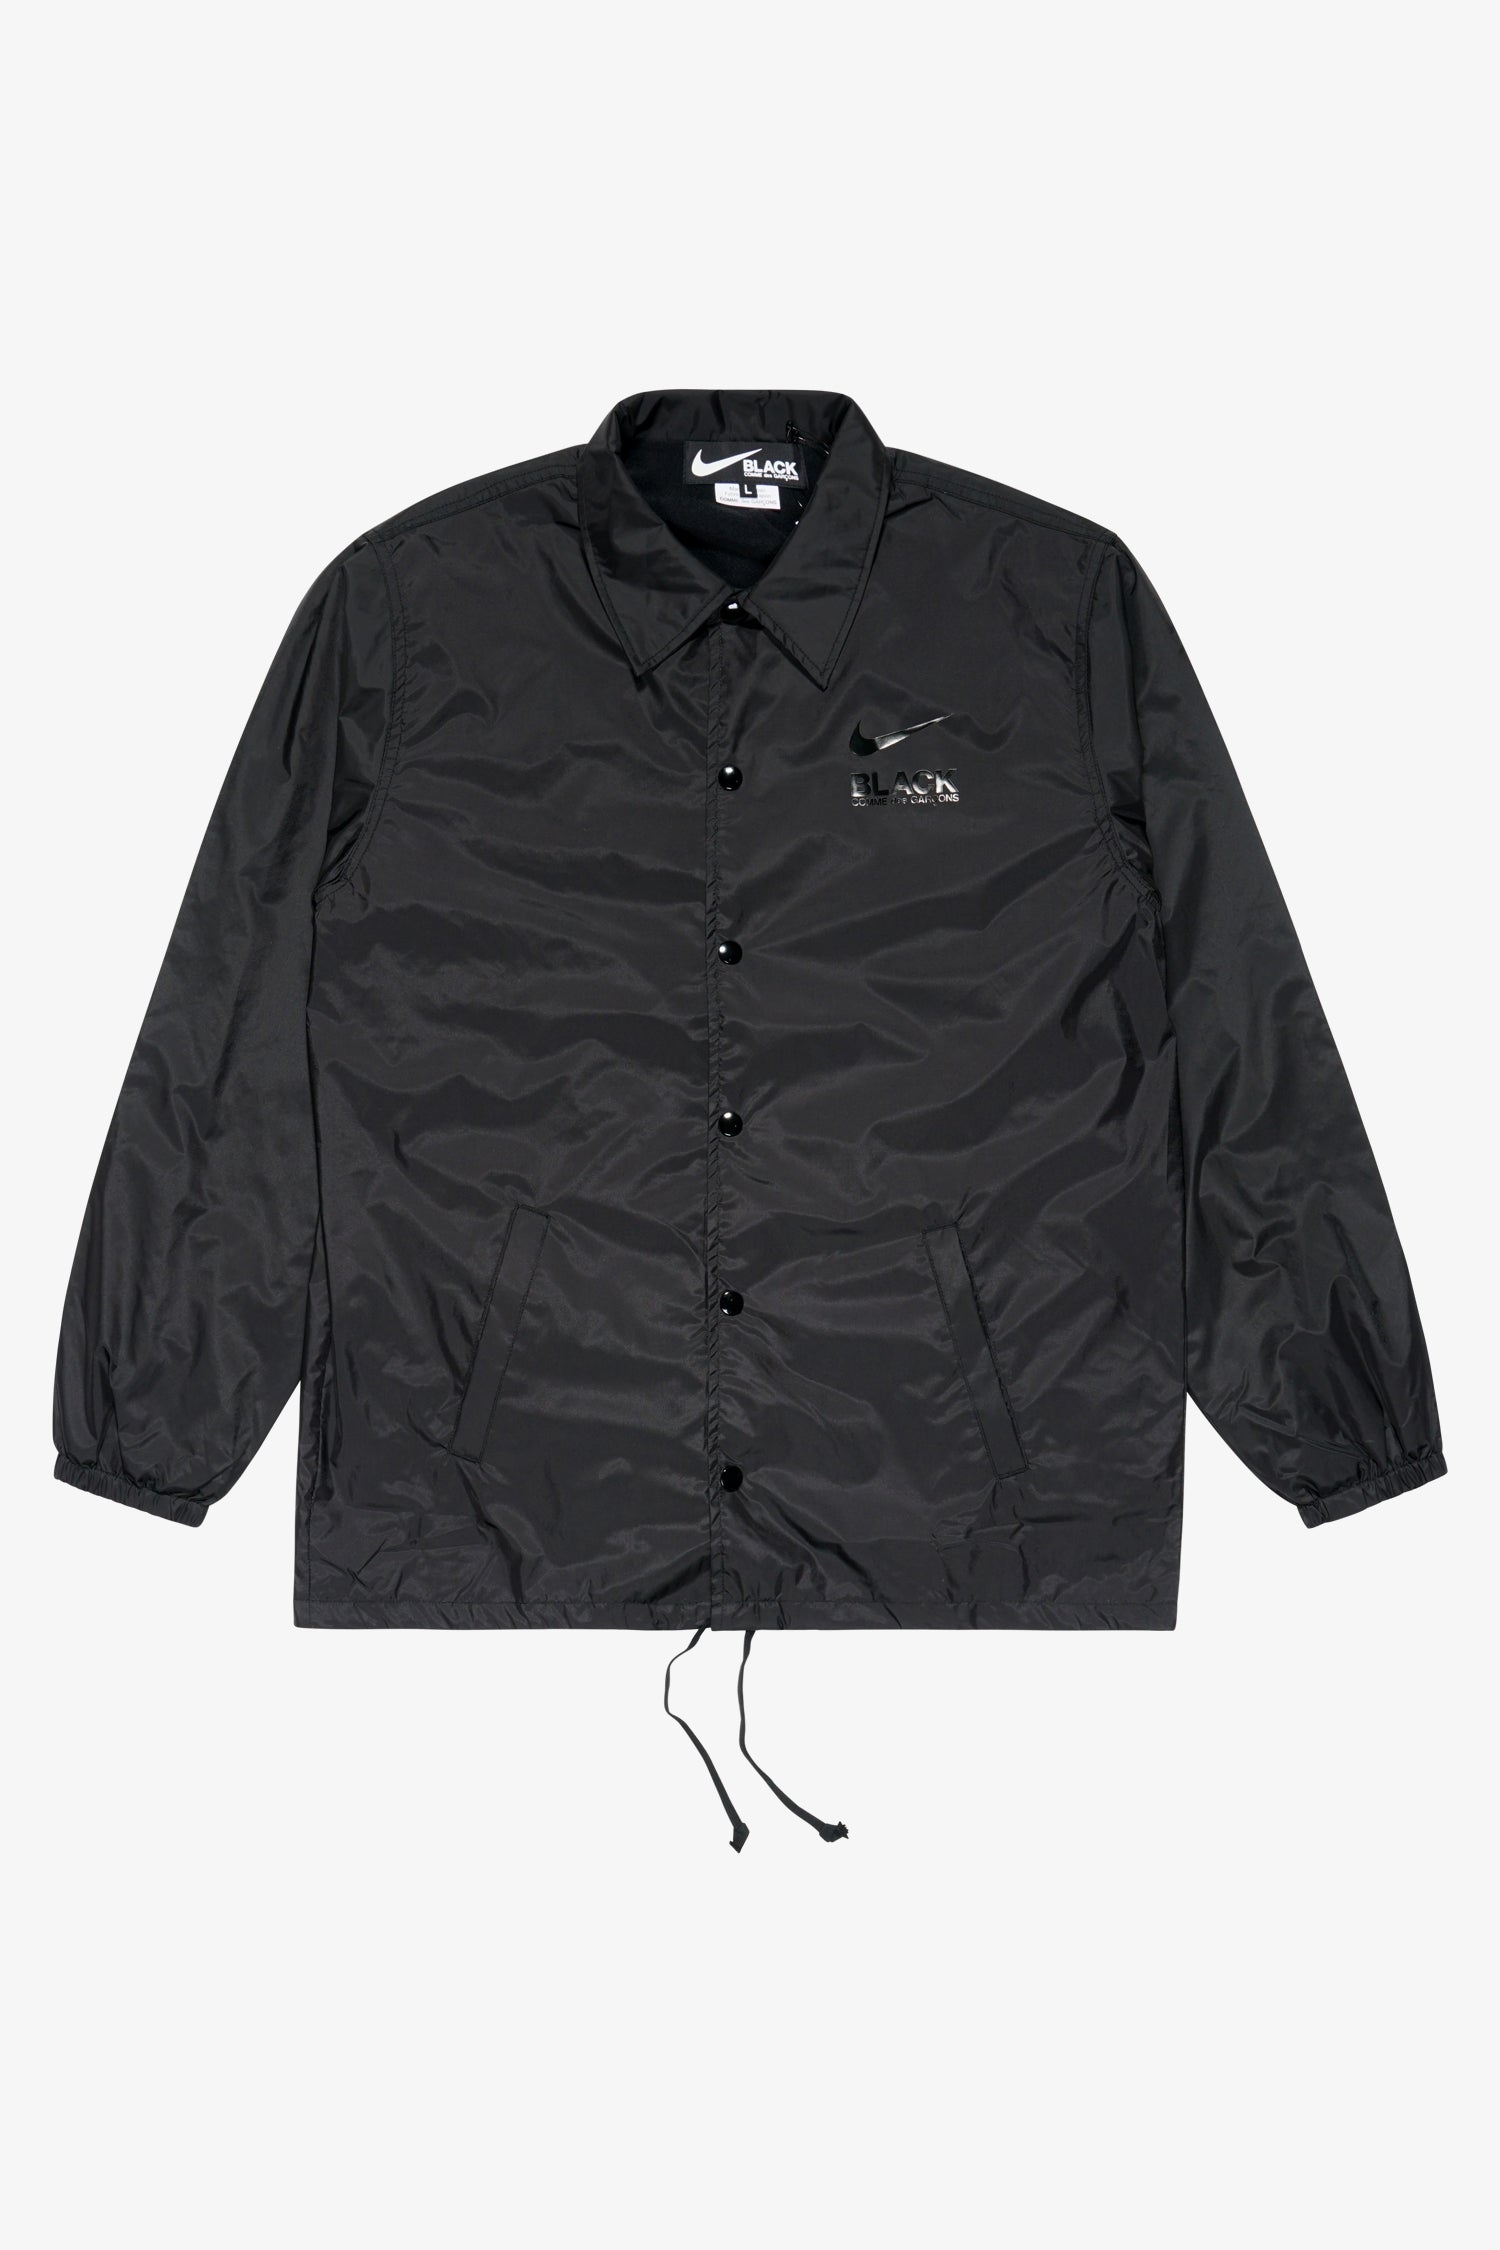 Selectshop FRAME - COMME DES GARCONS BLACK Nike Country Coach Jacket Outerwear Dubai